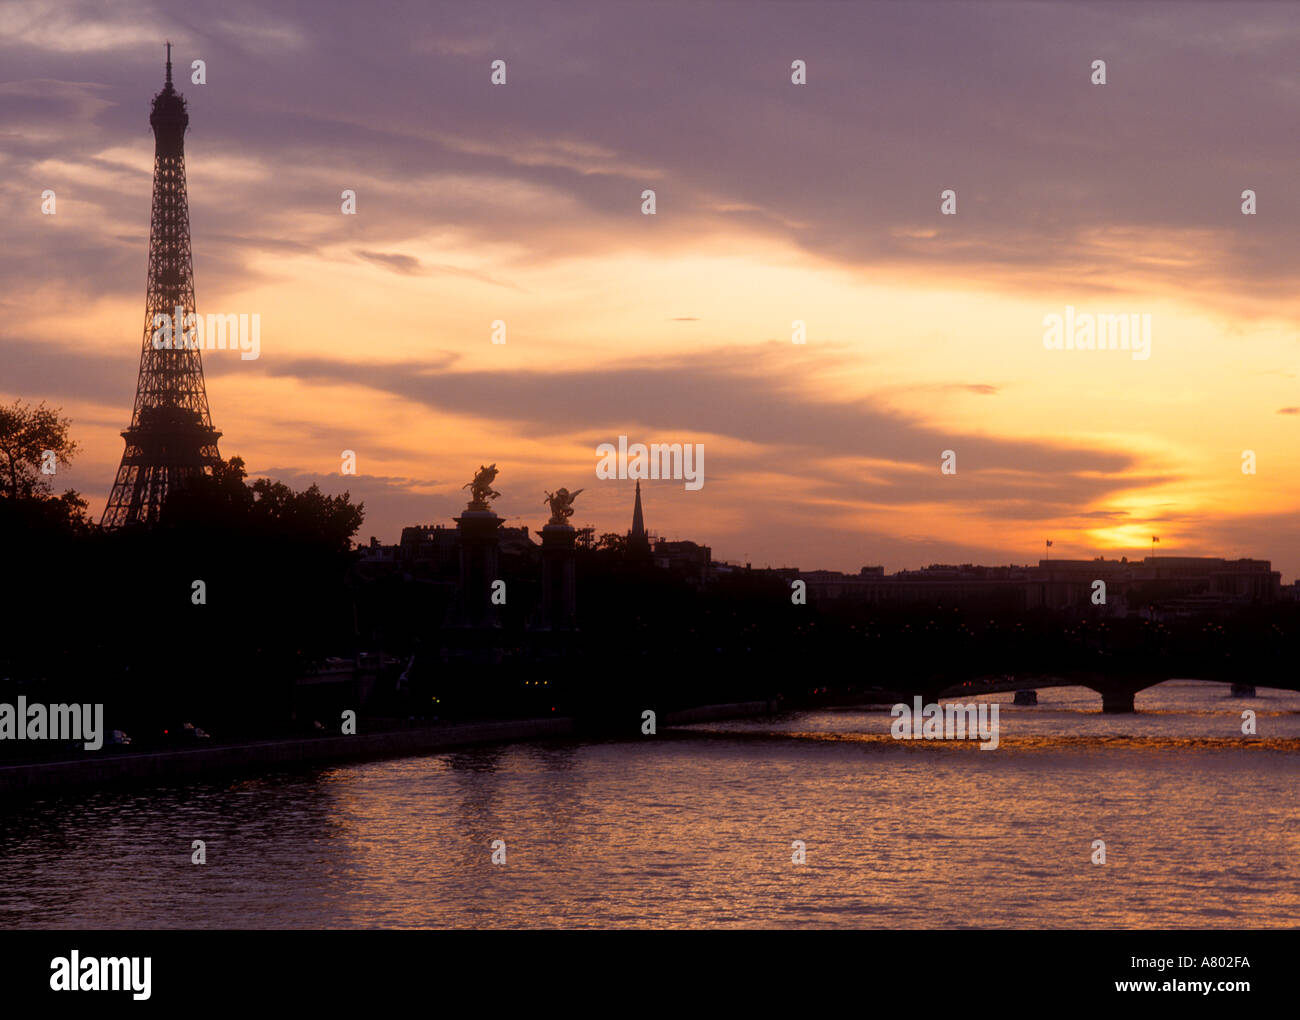 La Tour Eiffel sur les toits de la ville et de la Seine au coucher du soleil Paris France Banque D'Images